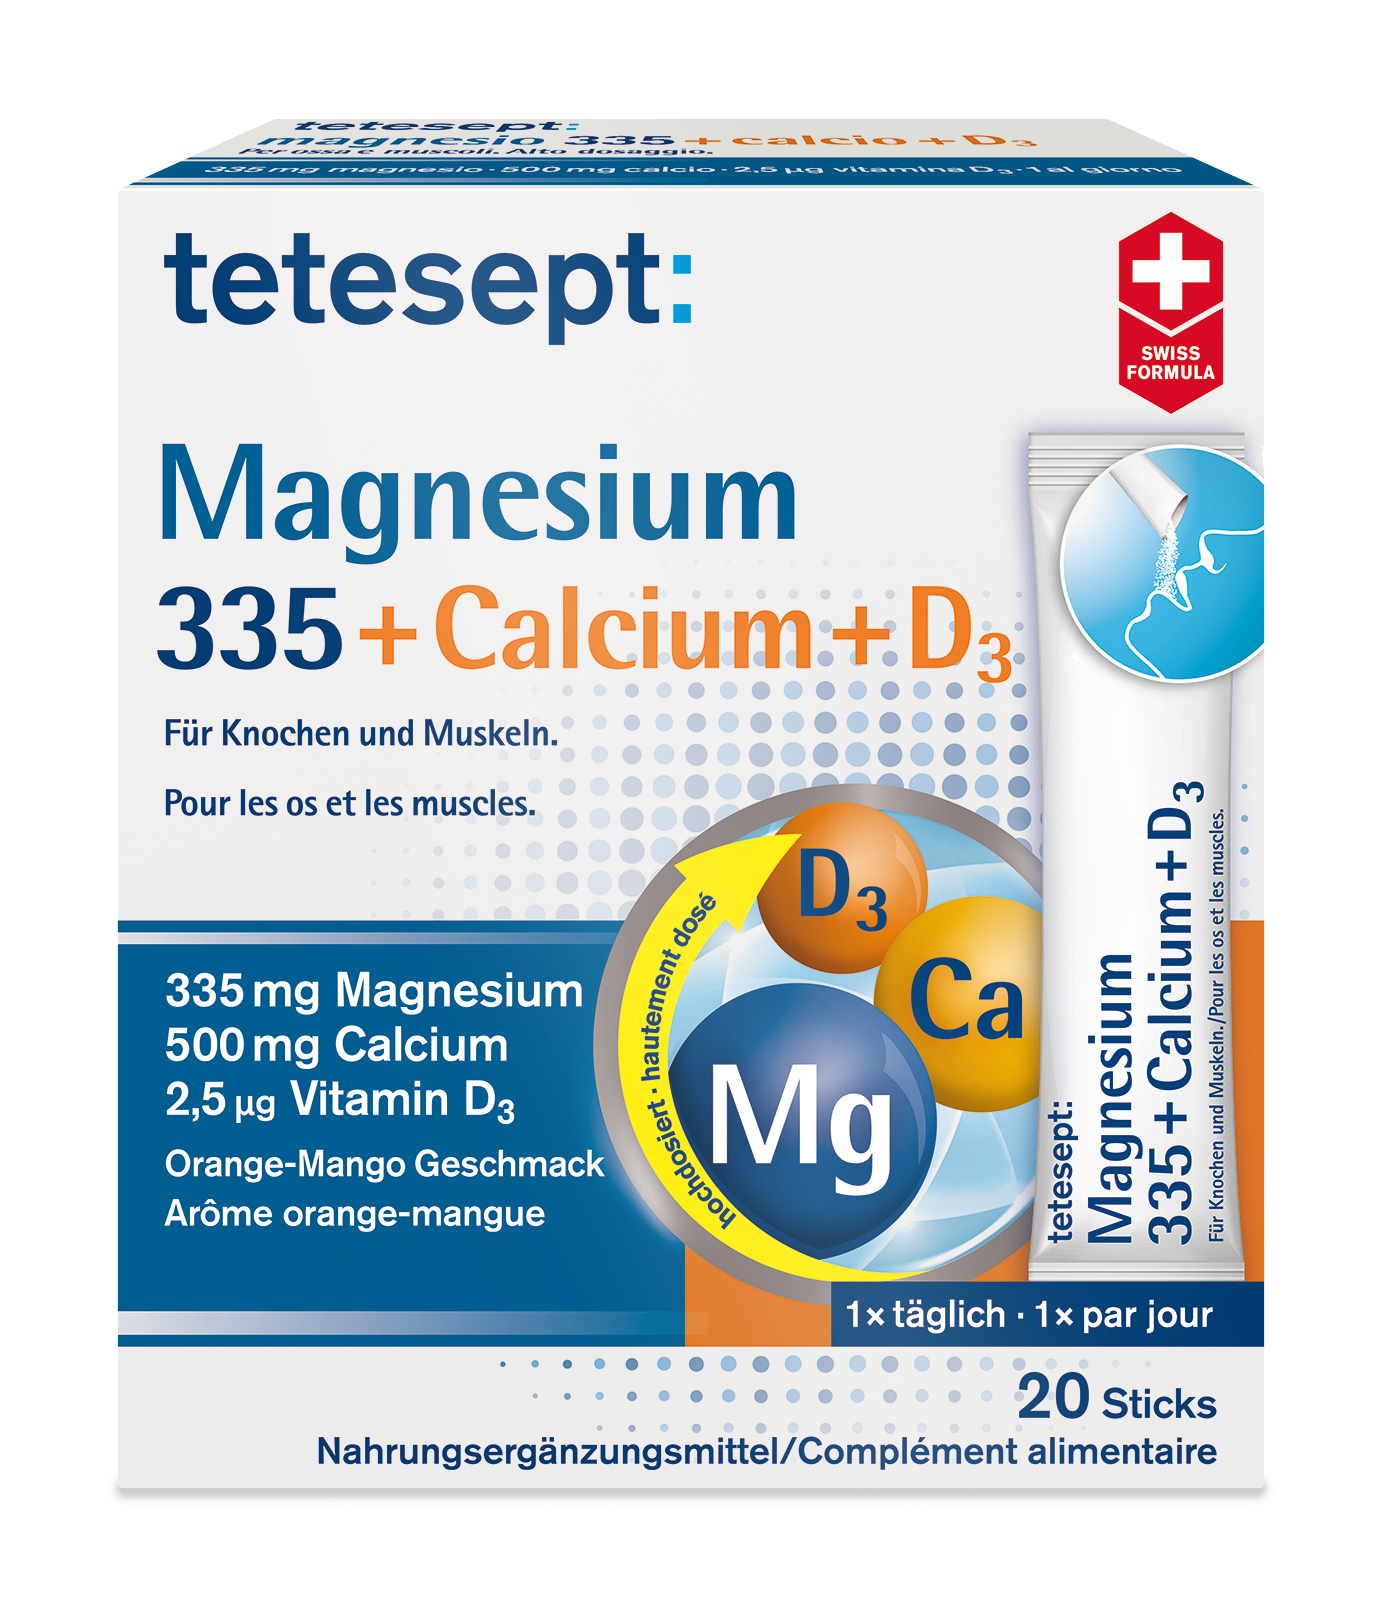 tetesept Magnesium 335 Calcium + D3 Sticks